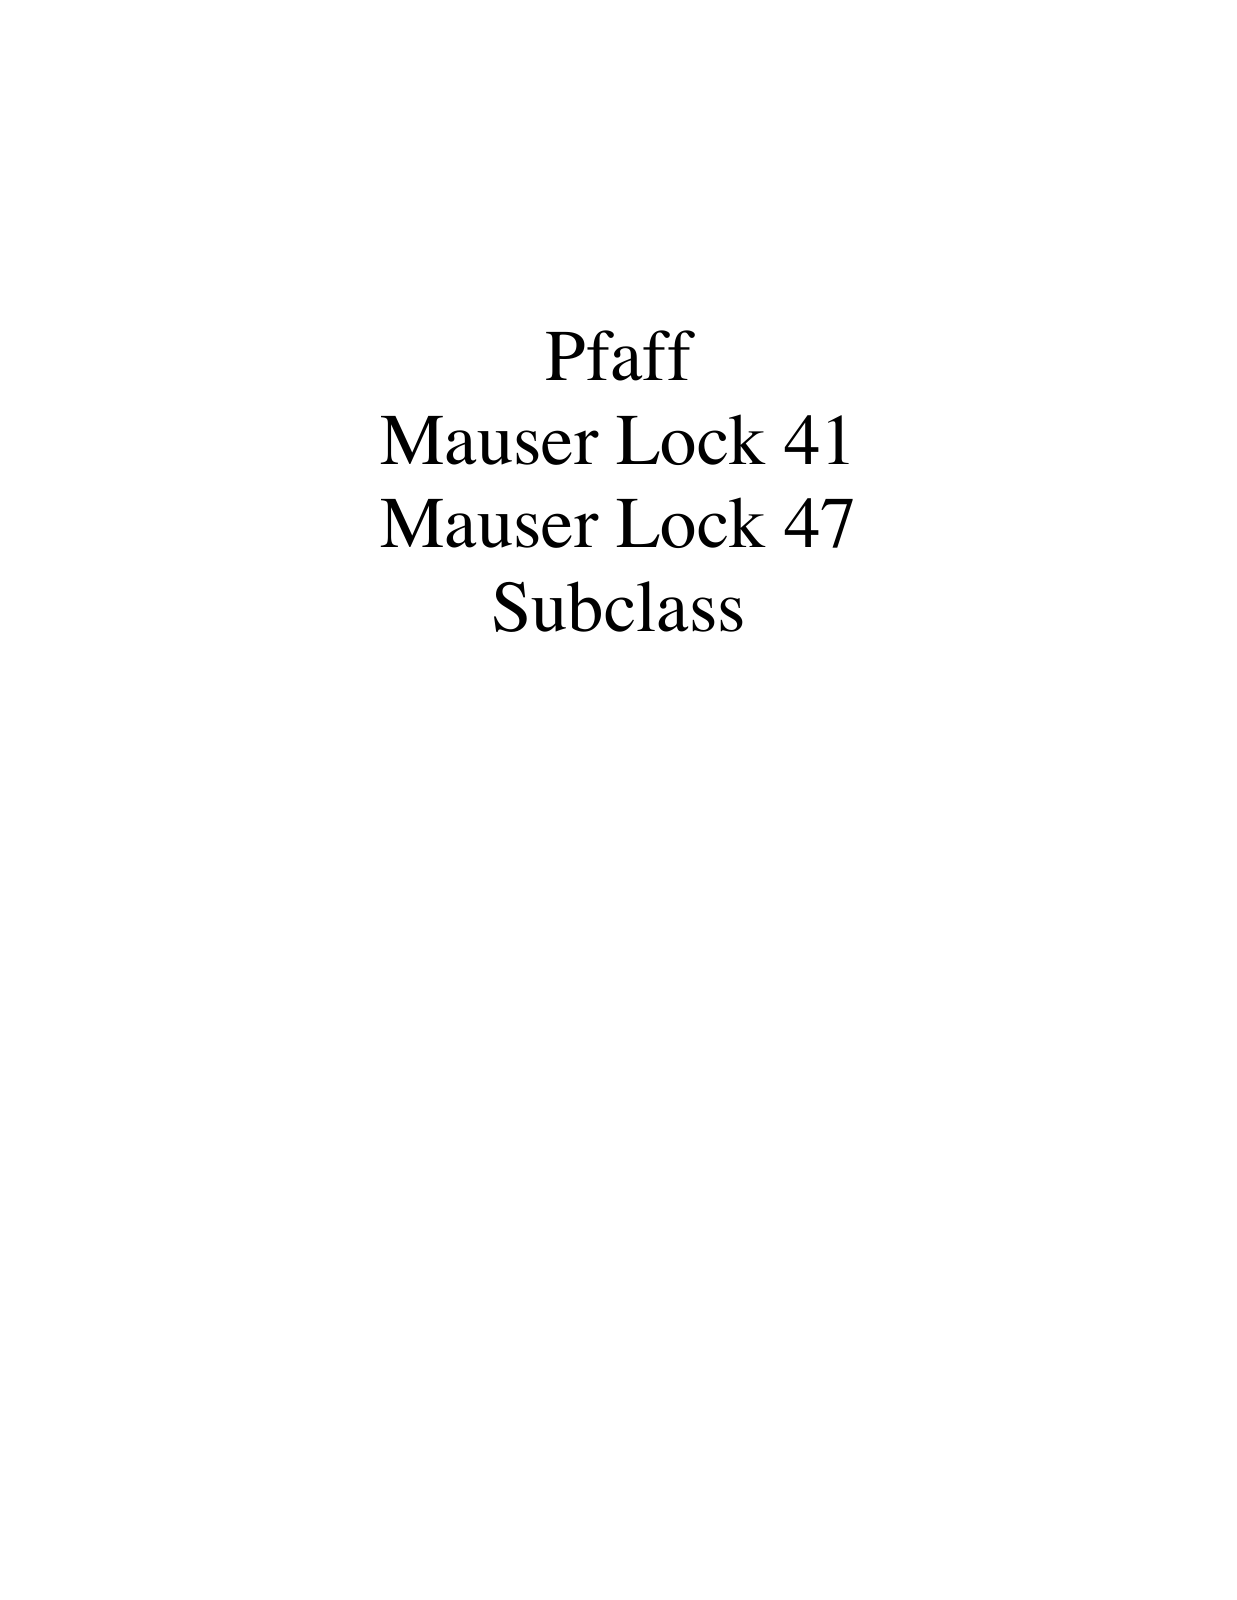 PFAFF Mauser Lock 41, Mauser Lock 47 Parts List